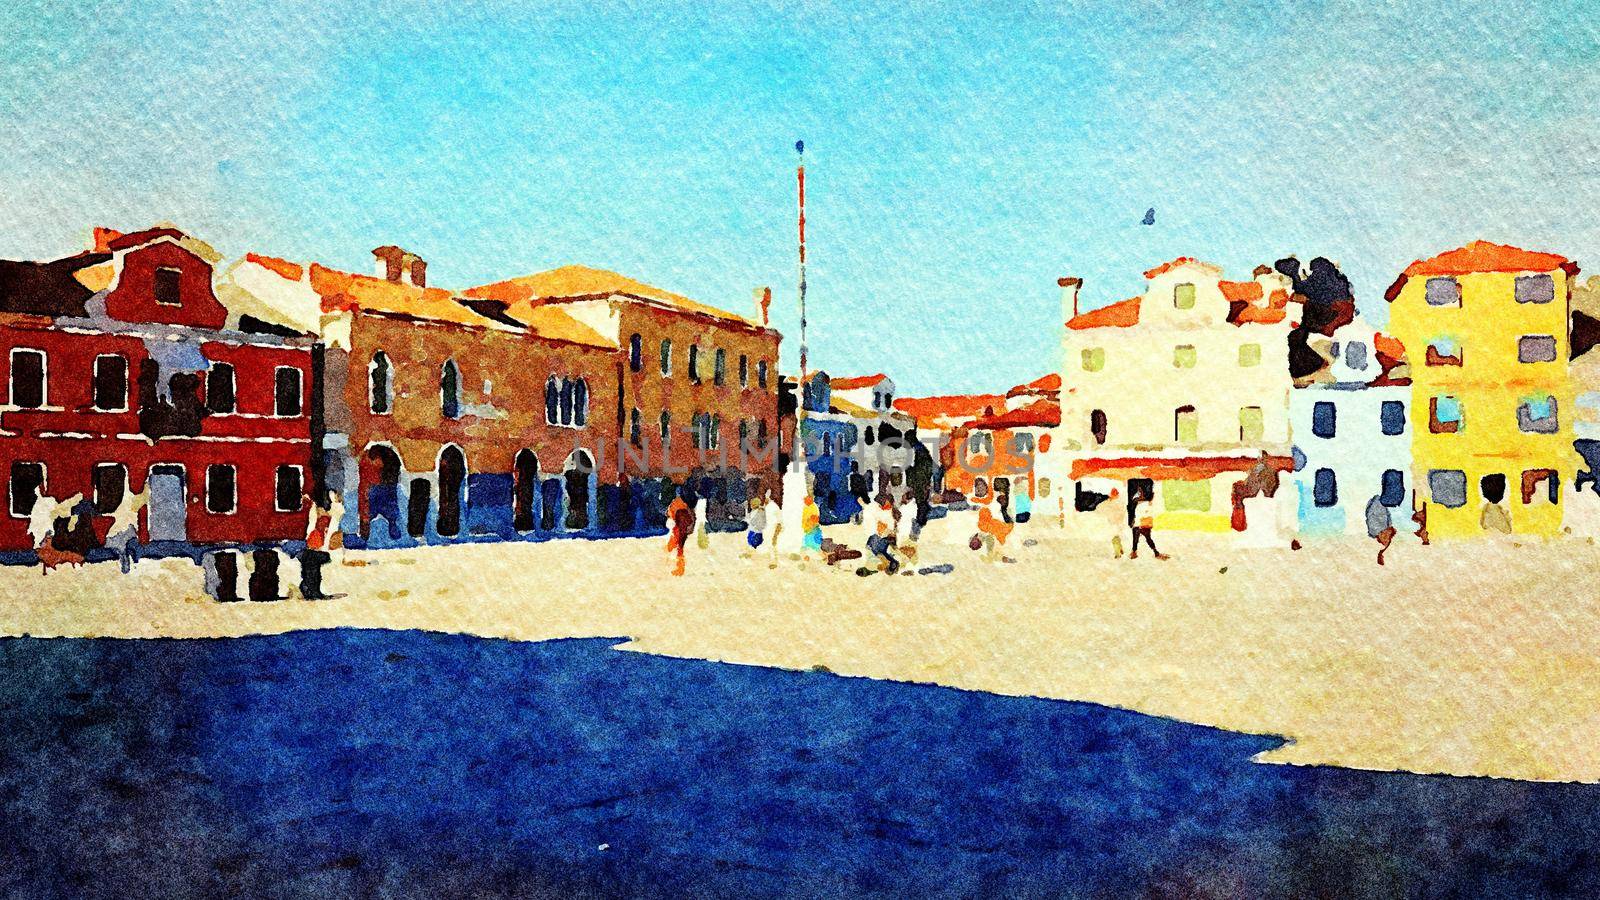 Watercolor which represents a glimpse of the main square of Burano in Venice